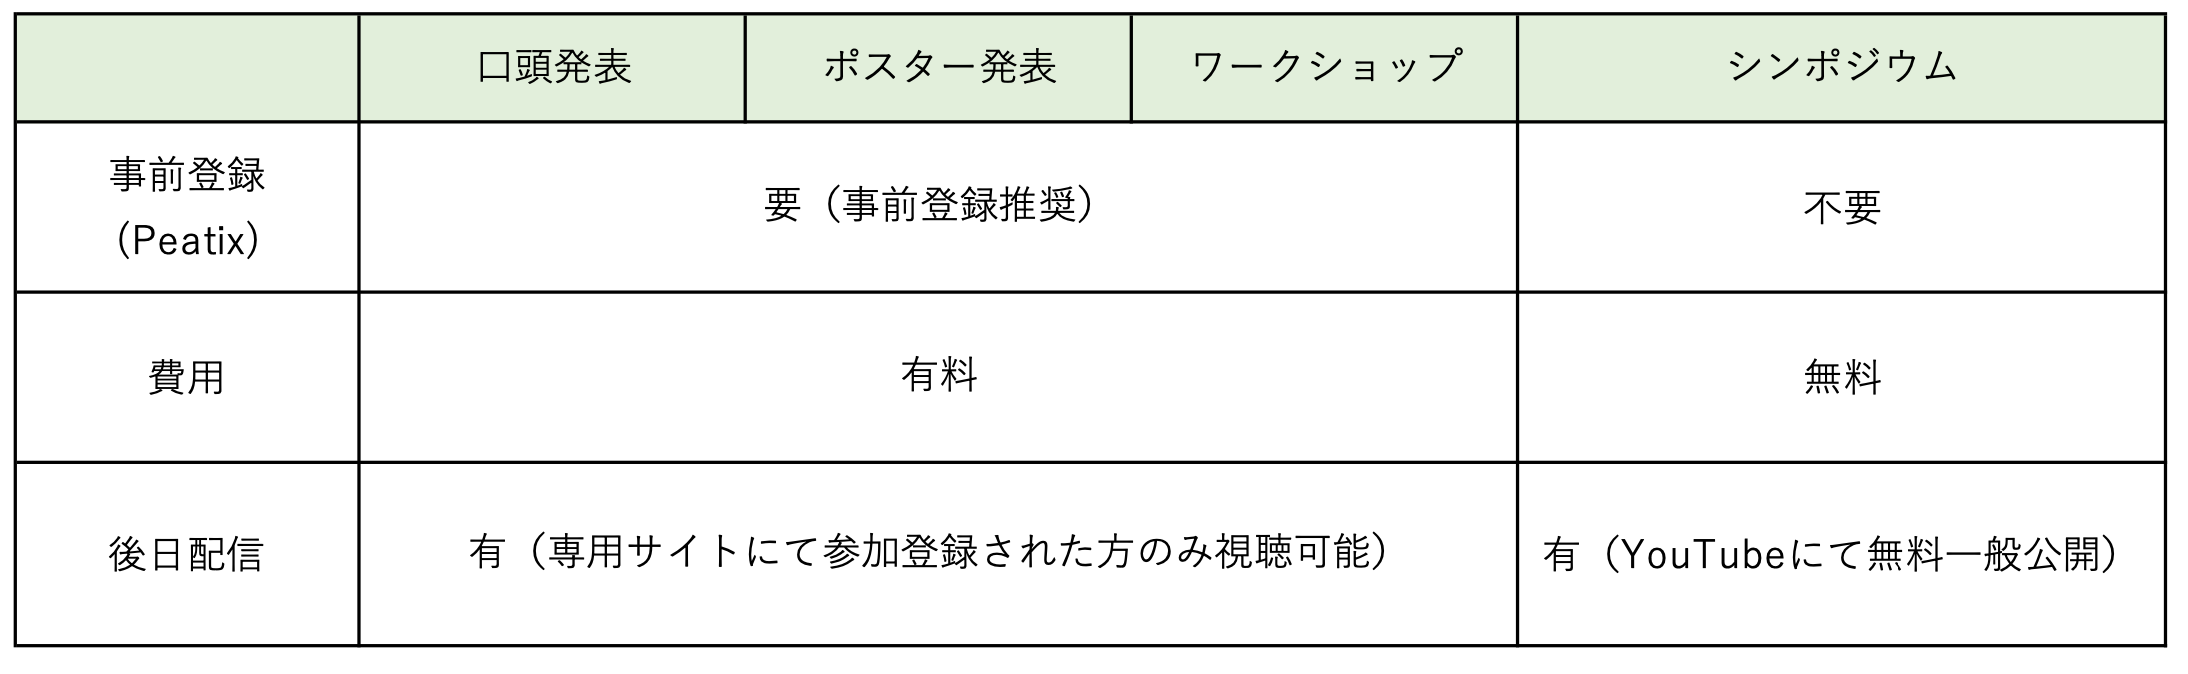 日本言語学会 - 166回大会プログラム